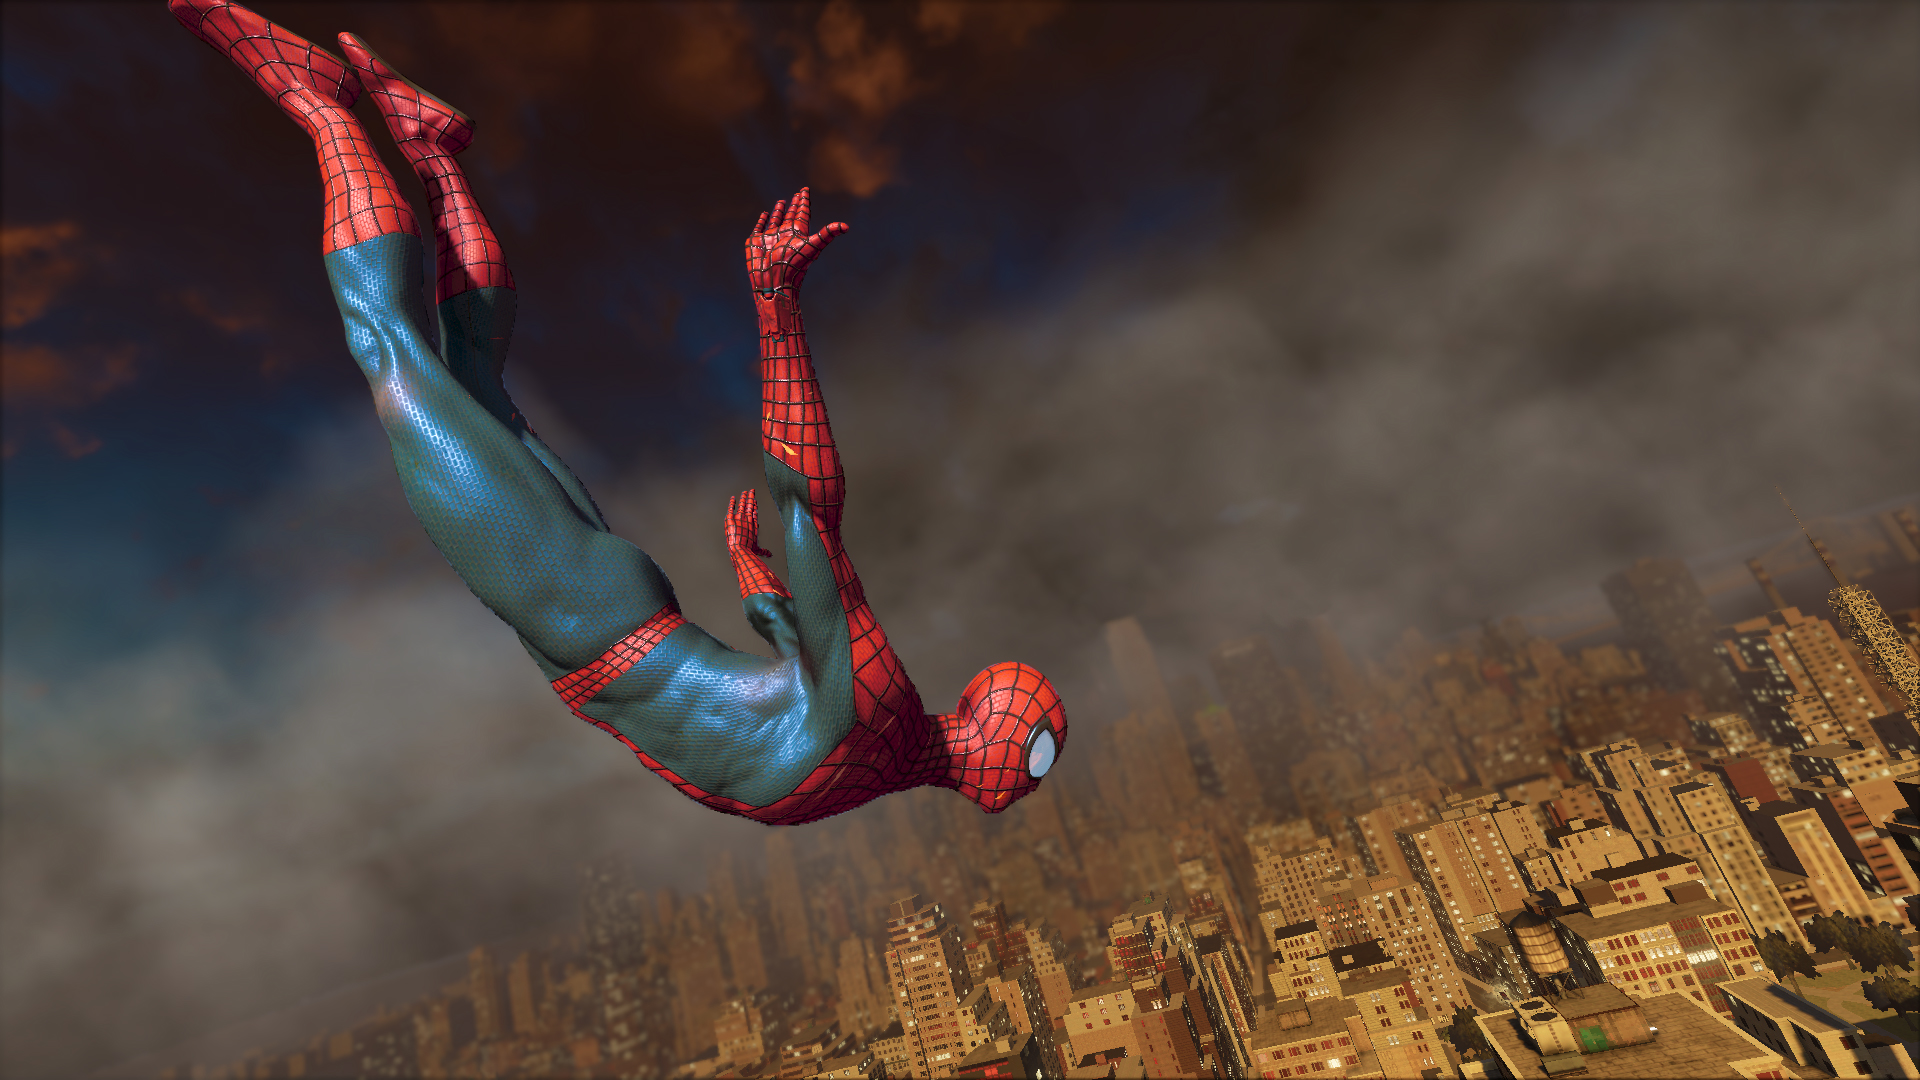 Человек паук 2 музыка. The amazing Spider-man игра 2014. The amazing Spider-man 2 (игра, 2014). Эмэйзинг Спайдер Мэн 2. Spider man 2014 игра.